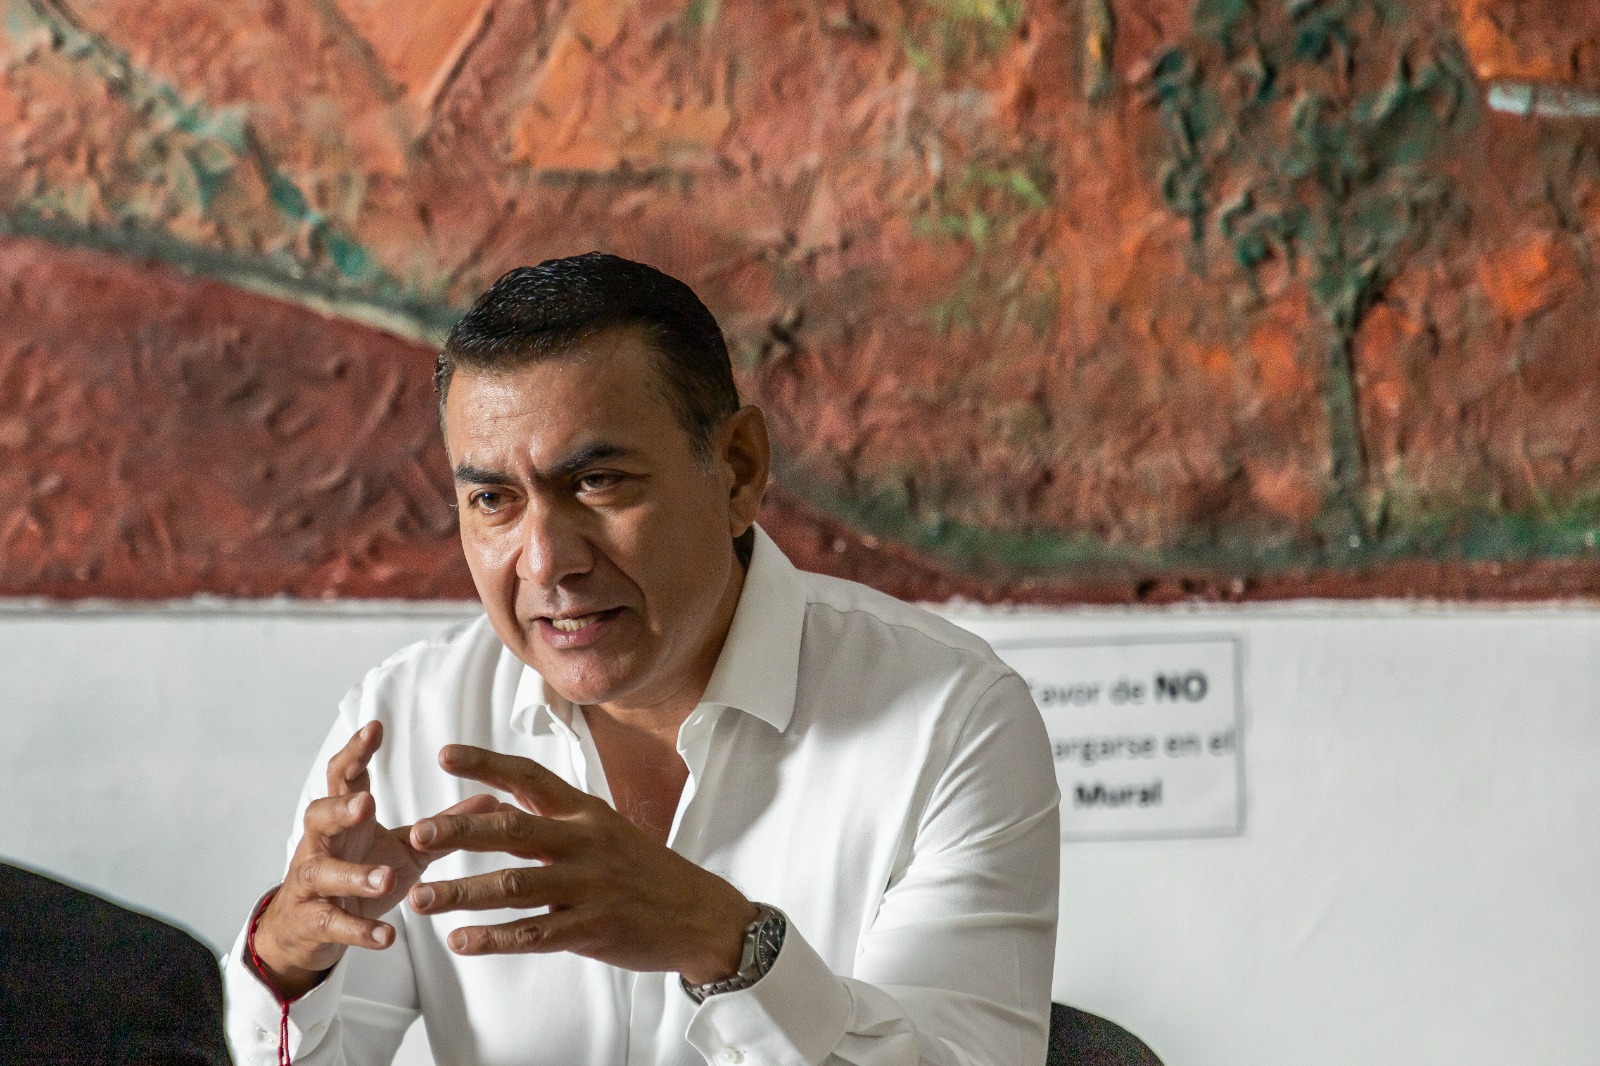 El alcalde de Tlajomulco de Zúñiga, Salvador Zamora, declaró a medios esta mañana que se registrará por la candidatura de Movimiento Ciudadano a la presidencia municipal de Guadalajara.